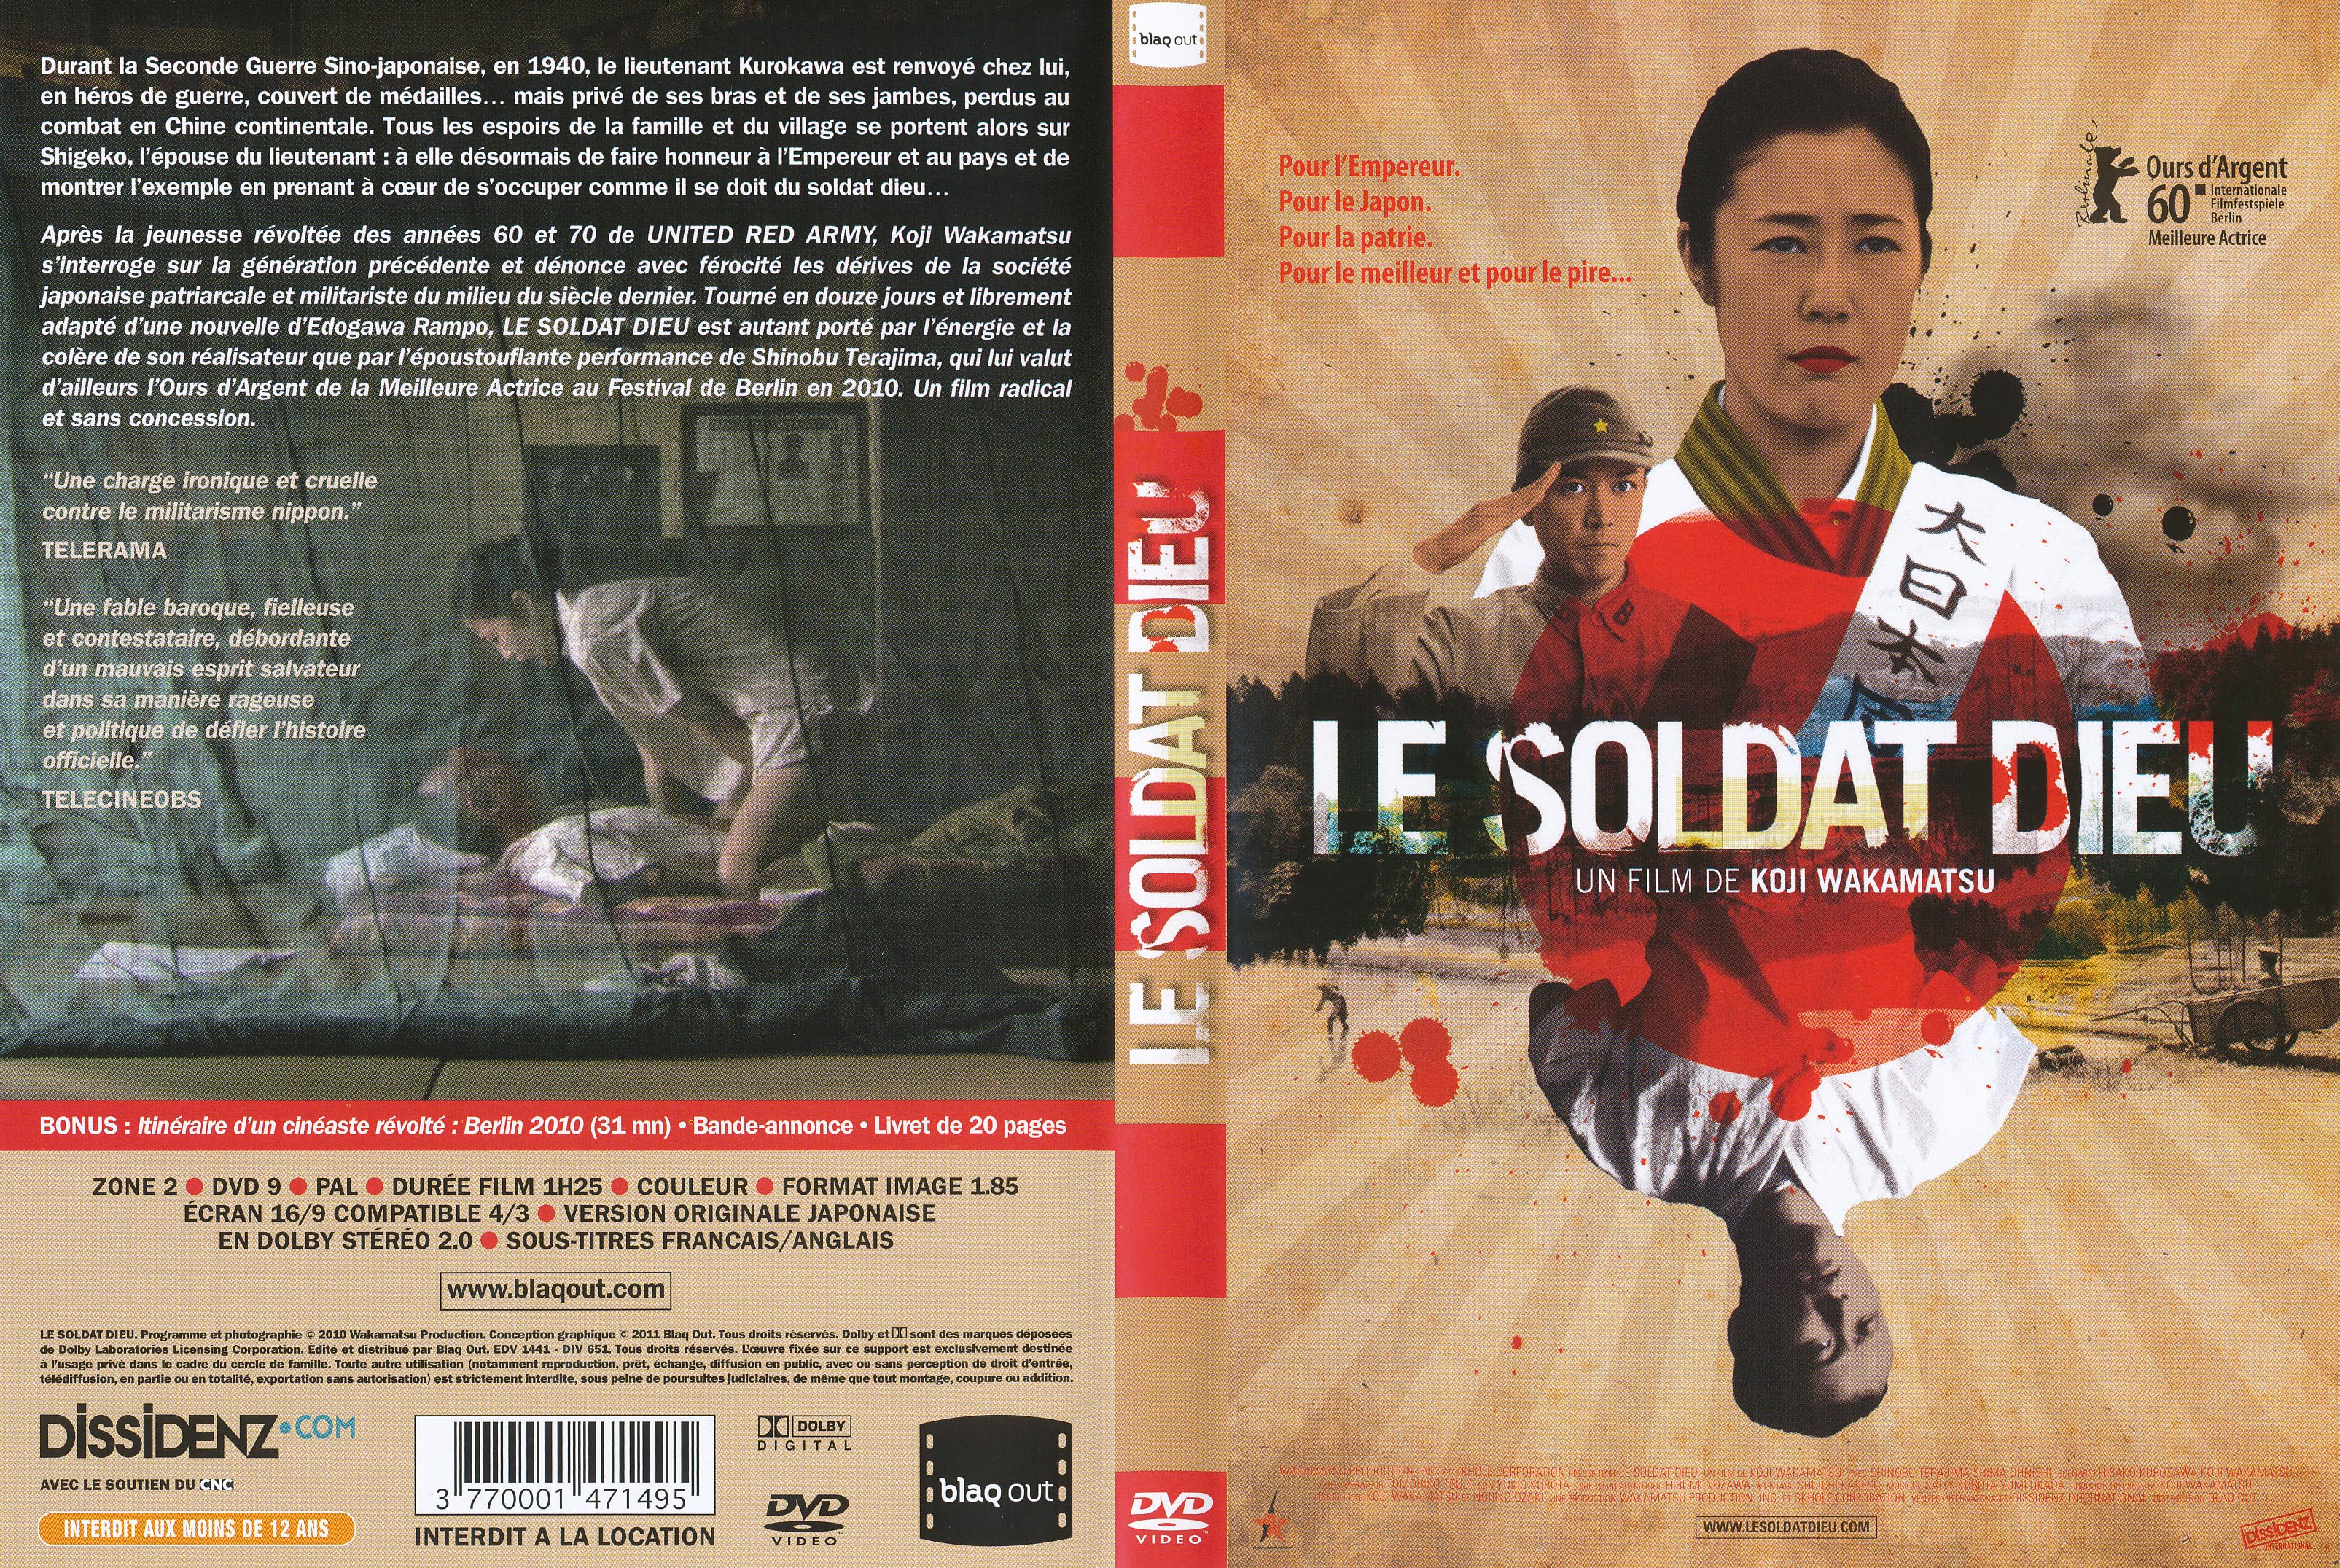 Jaquette DVD Le Soldat dieu